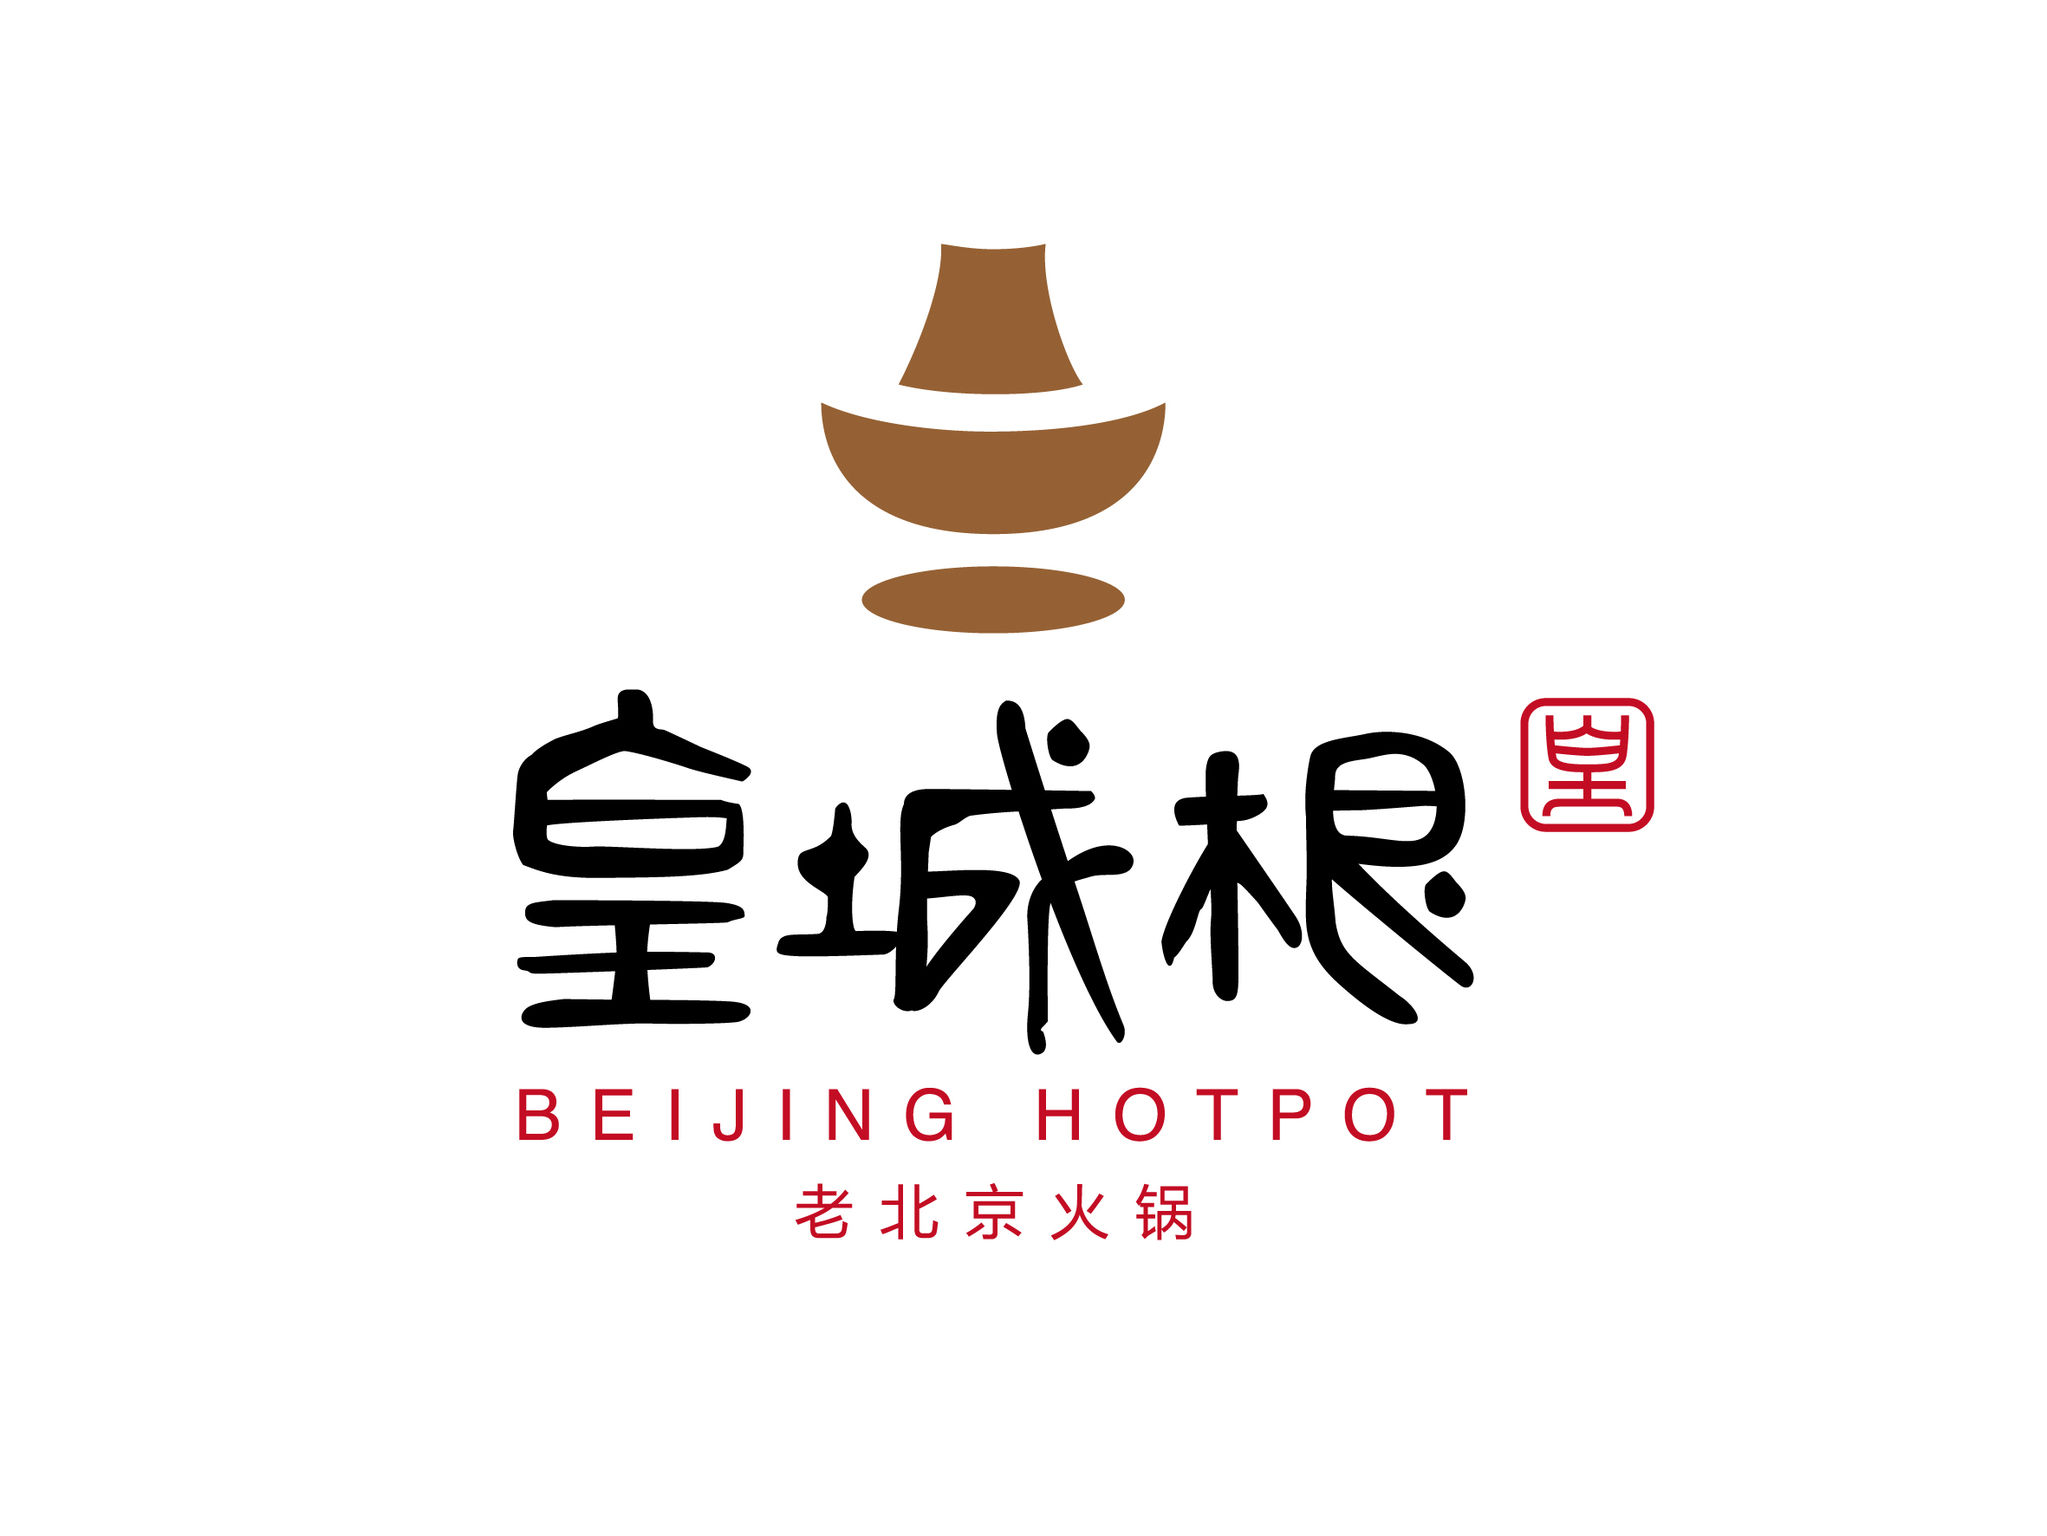 Beijing Hotpot